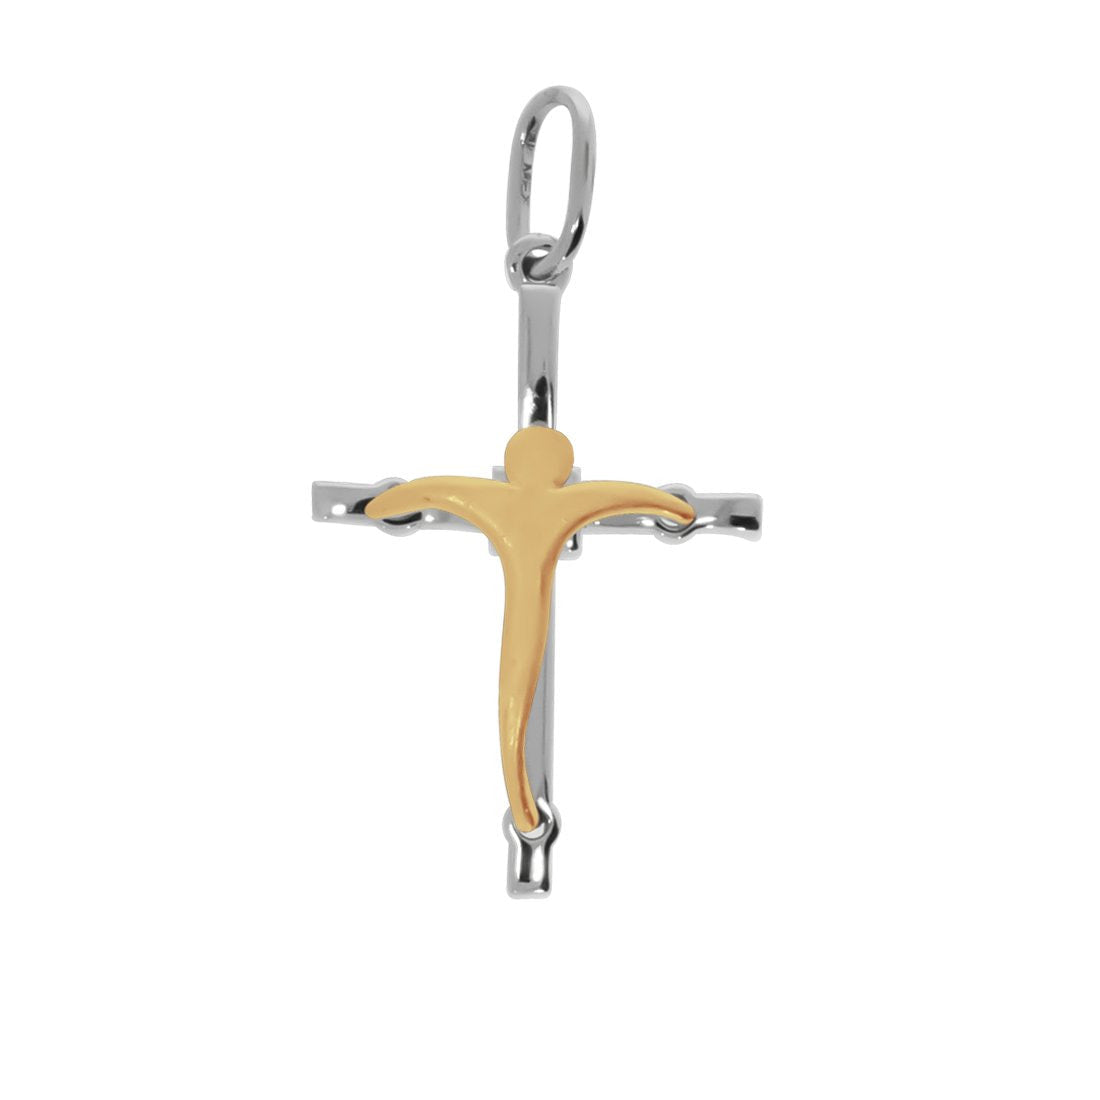 Cruz con Cristo Amarillo - Oro Blanco 14k - Infiniti Joyas